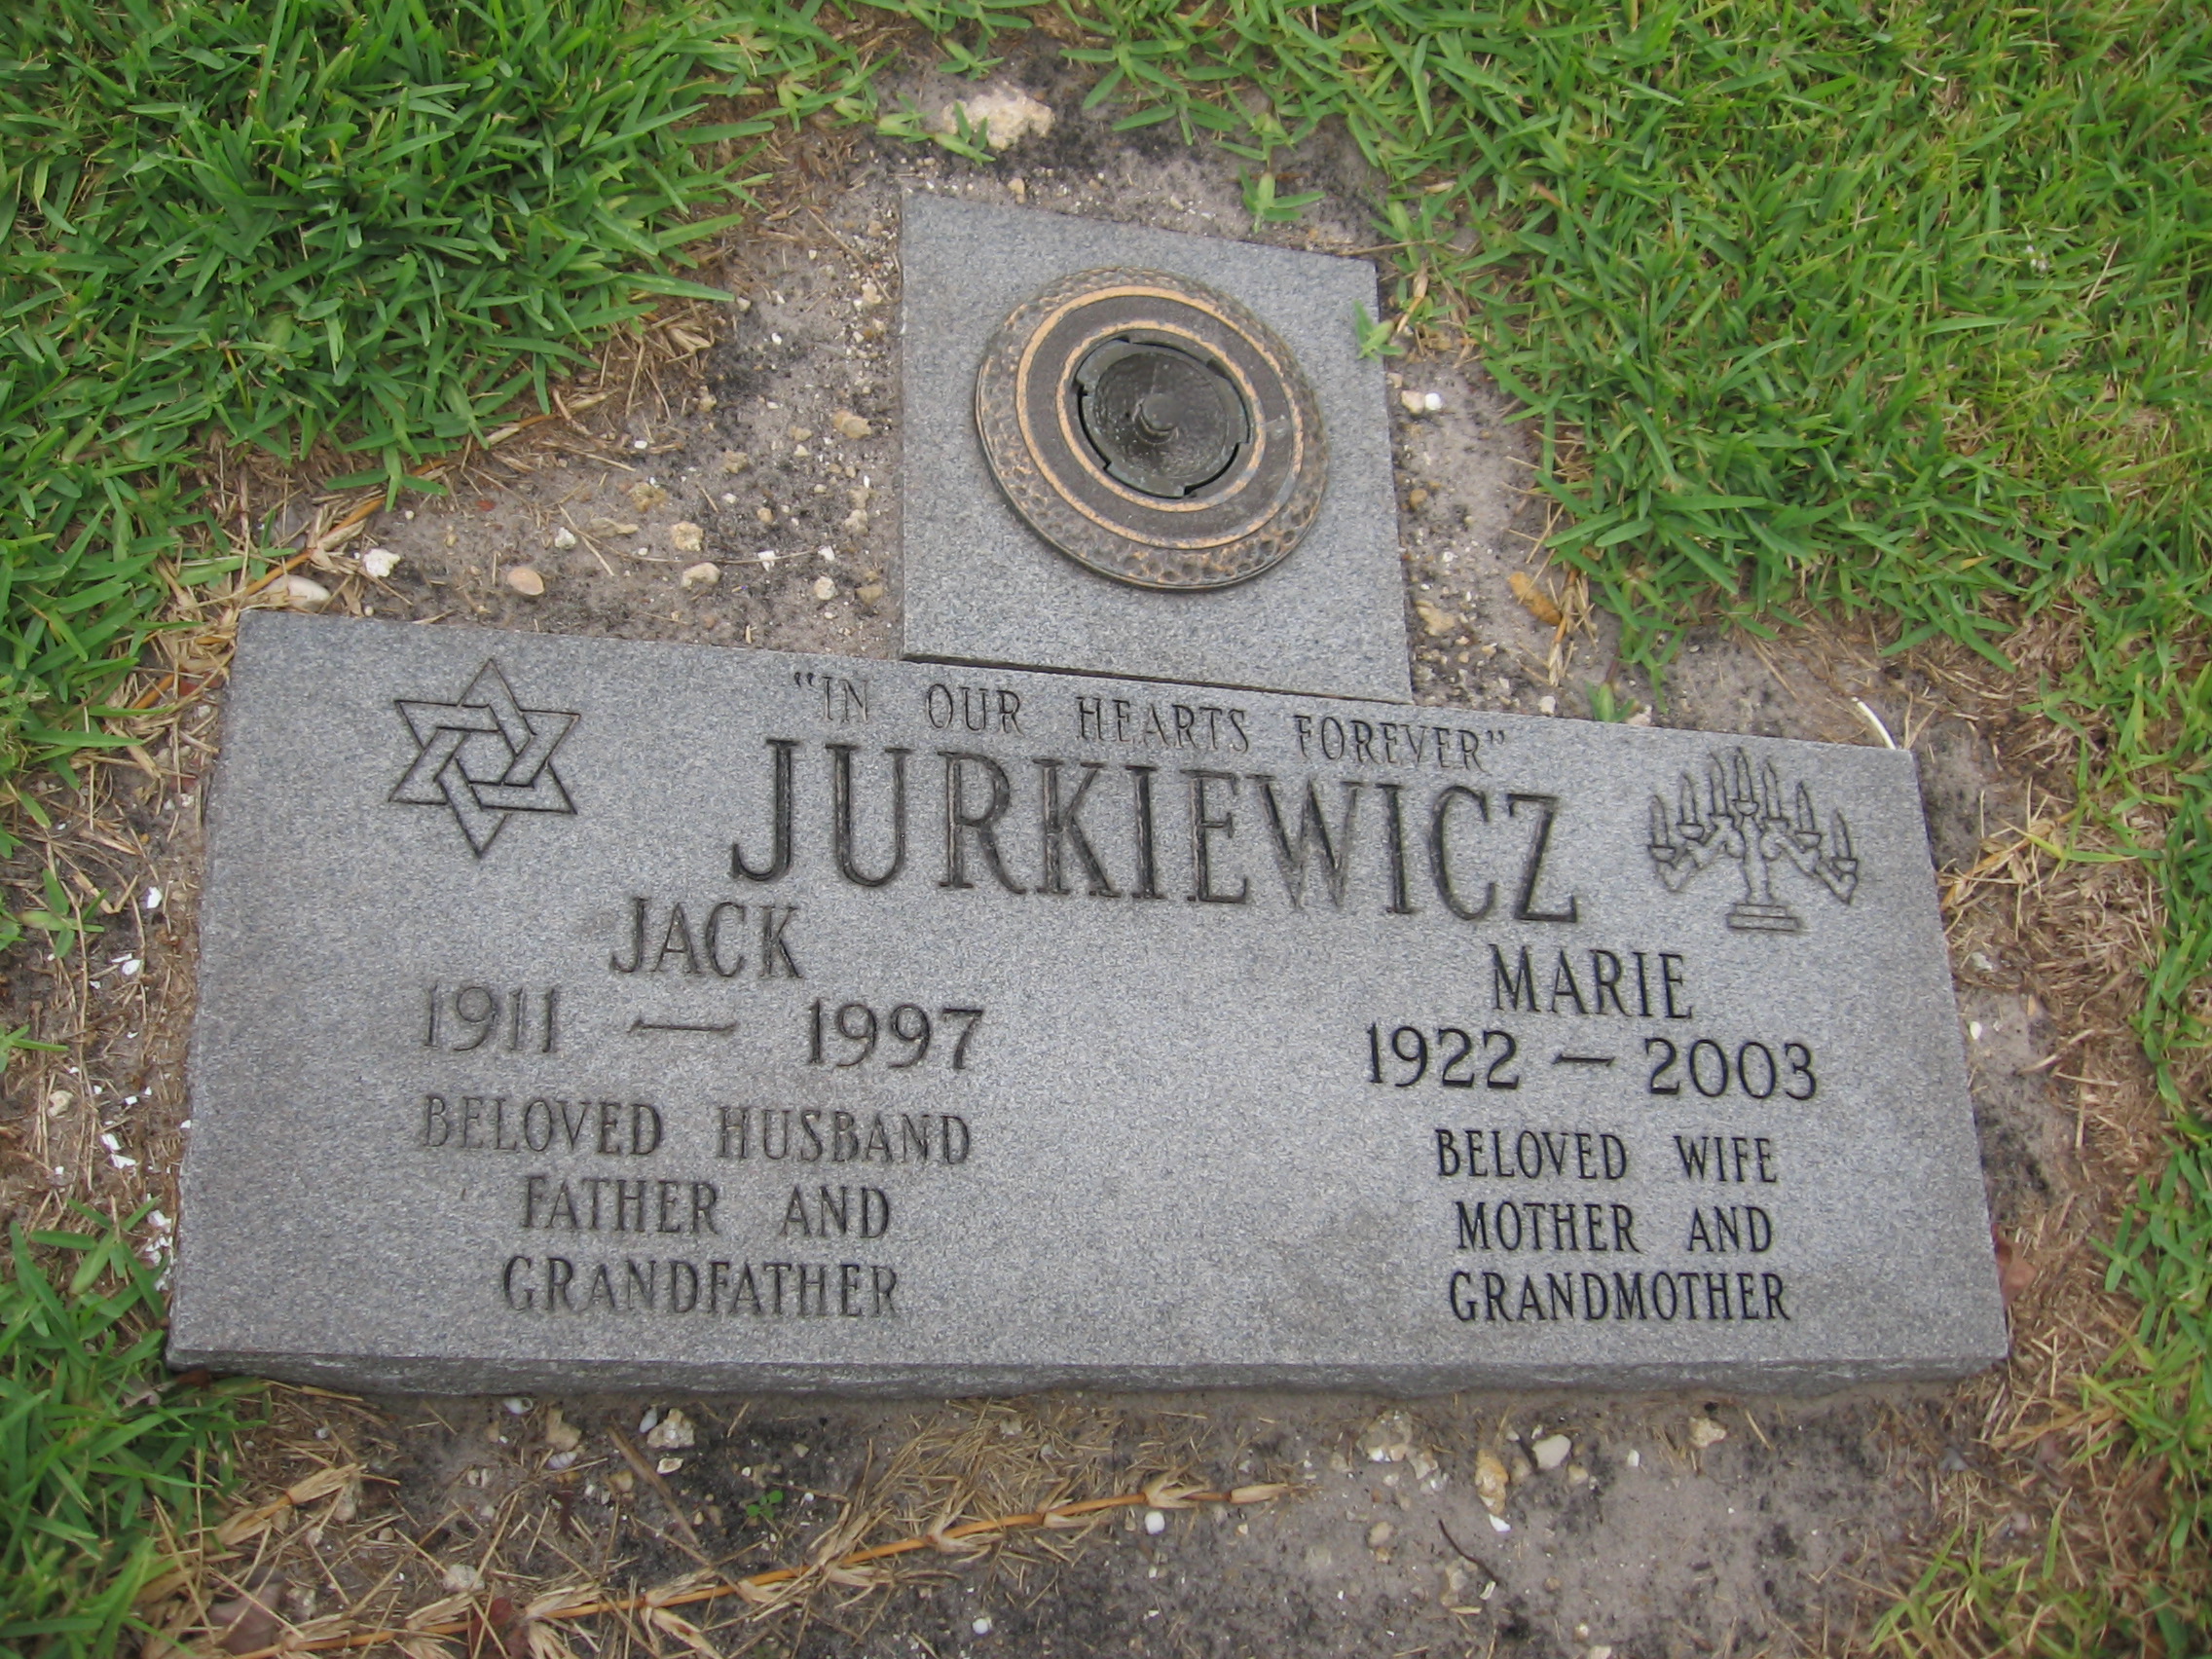 Jack Jurkiewicz